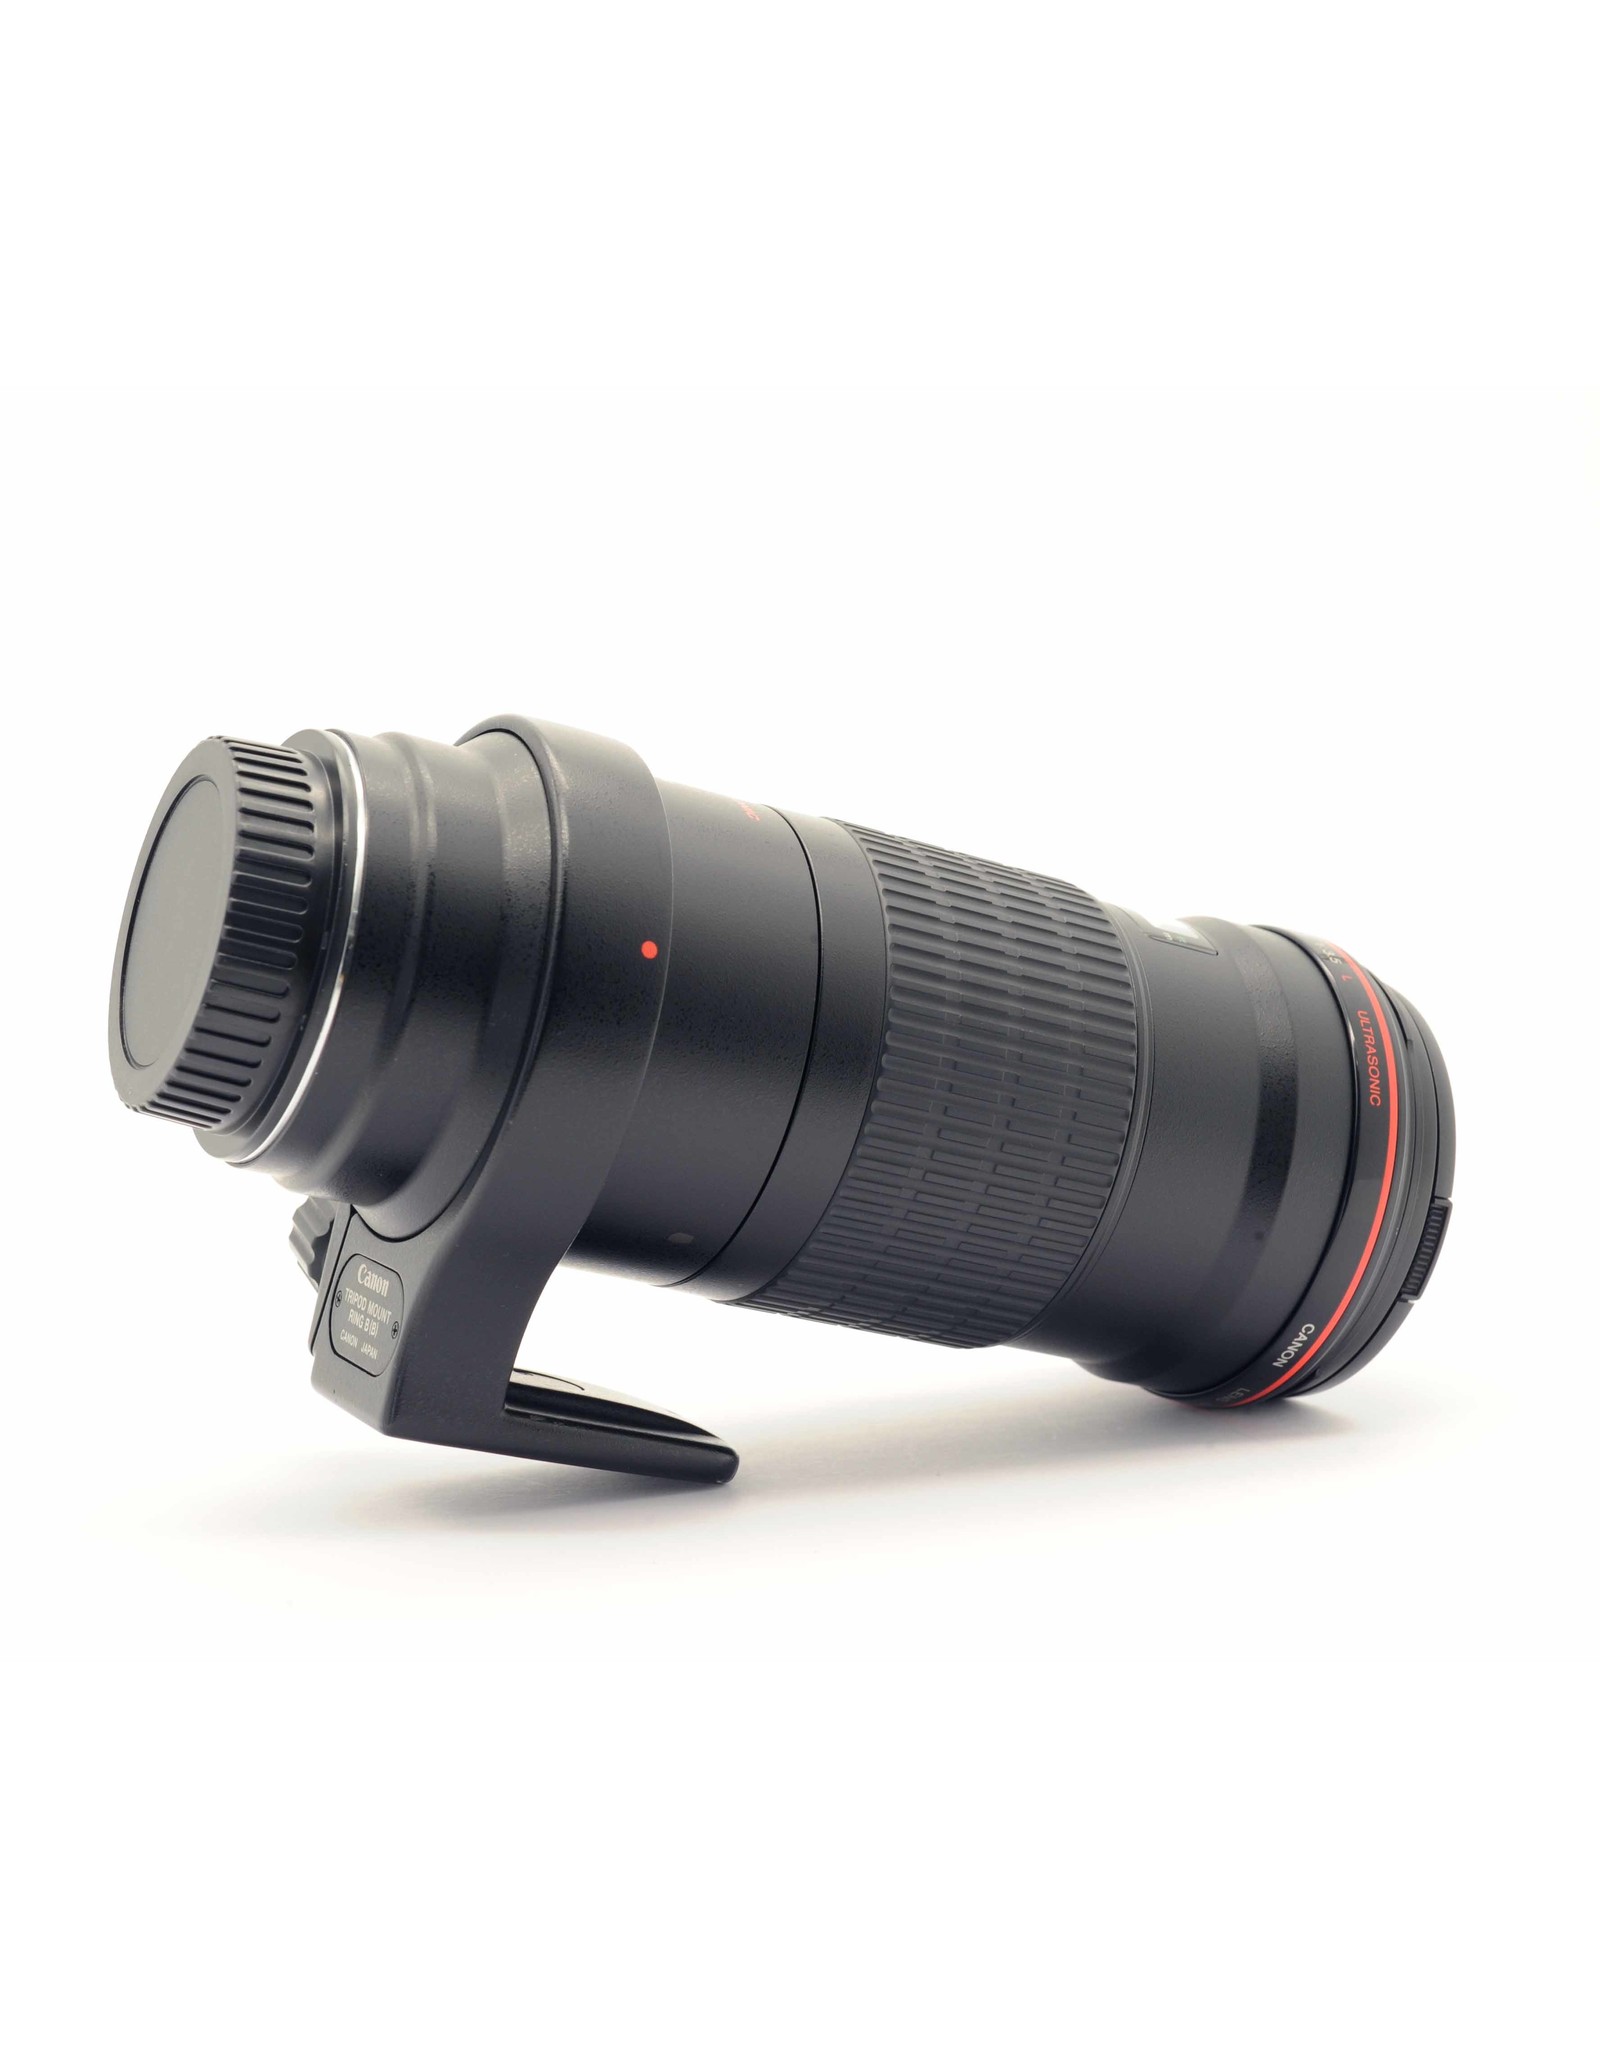 Canon Canon EF180mm f3.5L USM Macro   A3022504